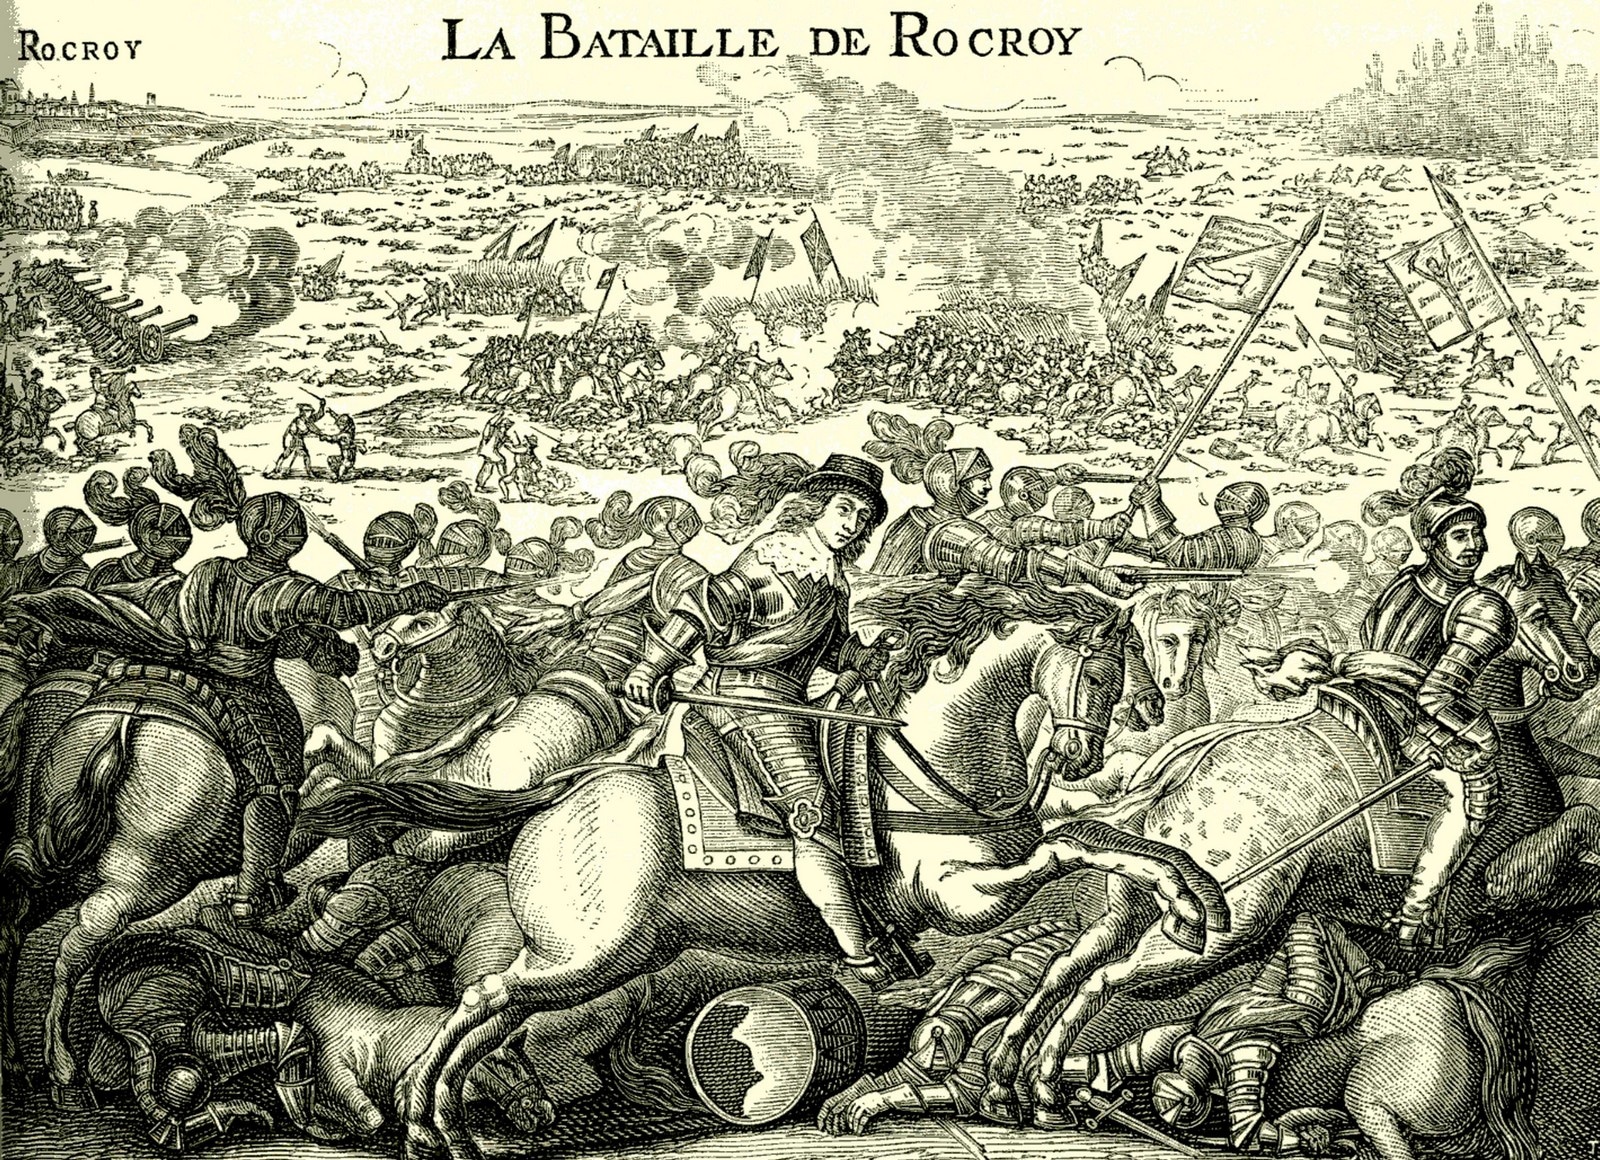 Victoire de Louis II de Bourbon-Condé sur les armées espagnols lors de la bataille de Rocroi, le 19 mai 1643,
Auteurs  : ABECASIS/SIPA,
Numéro de reportage  : 00541710_000003.